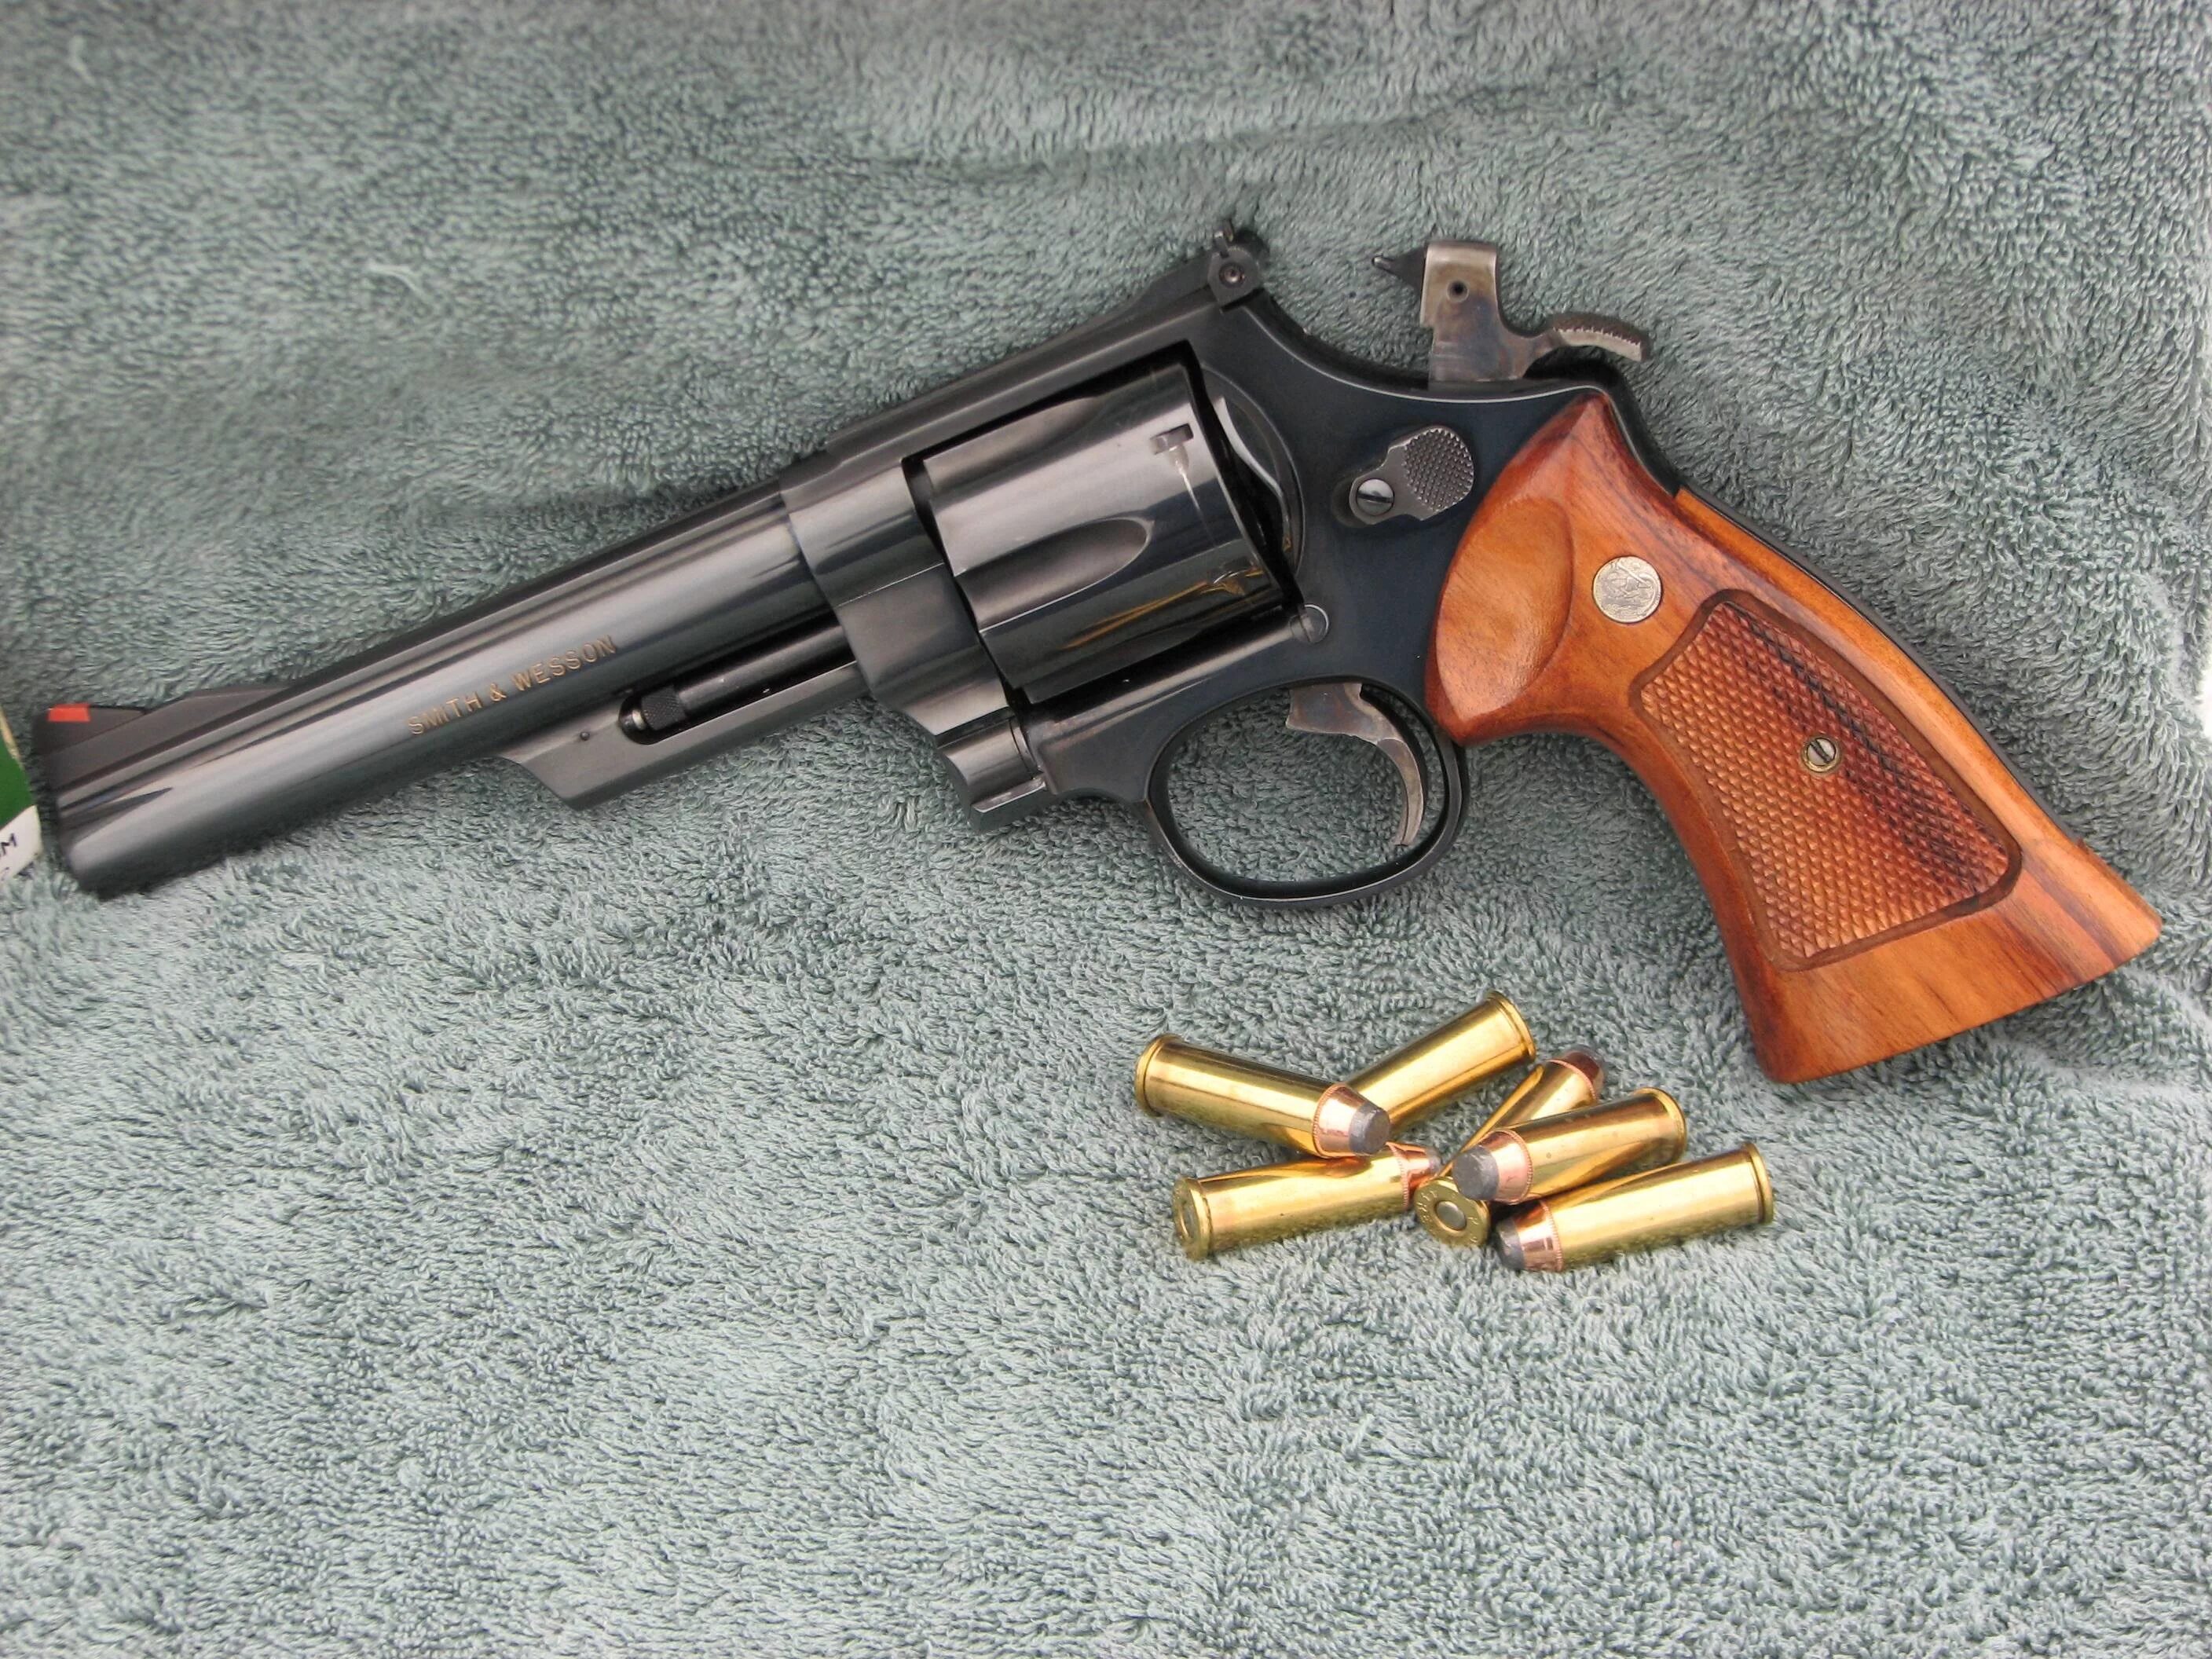 Калибр магнума. Револьвер Магнум 44. Смит-Вессон револьвер 44 калибра. Магнум 44 калибра. 44 Magnum револьвер.